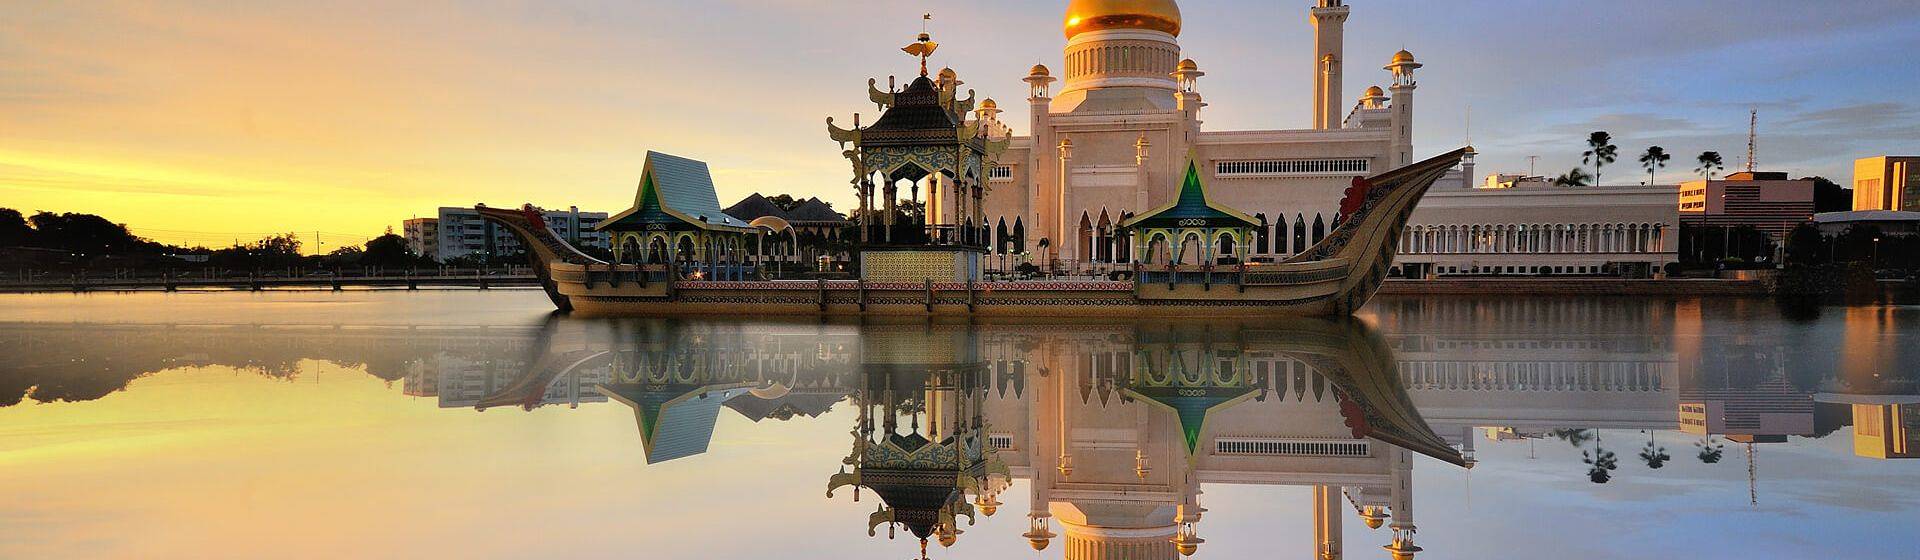 Holidays to Brunei Image